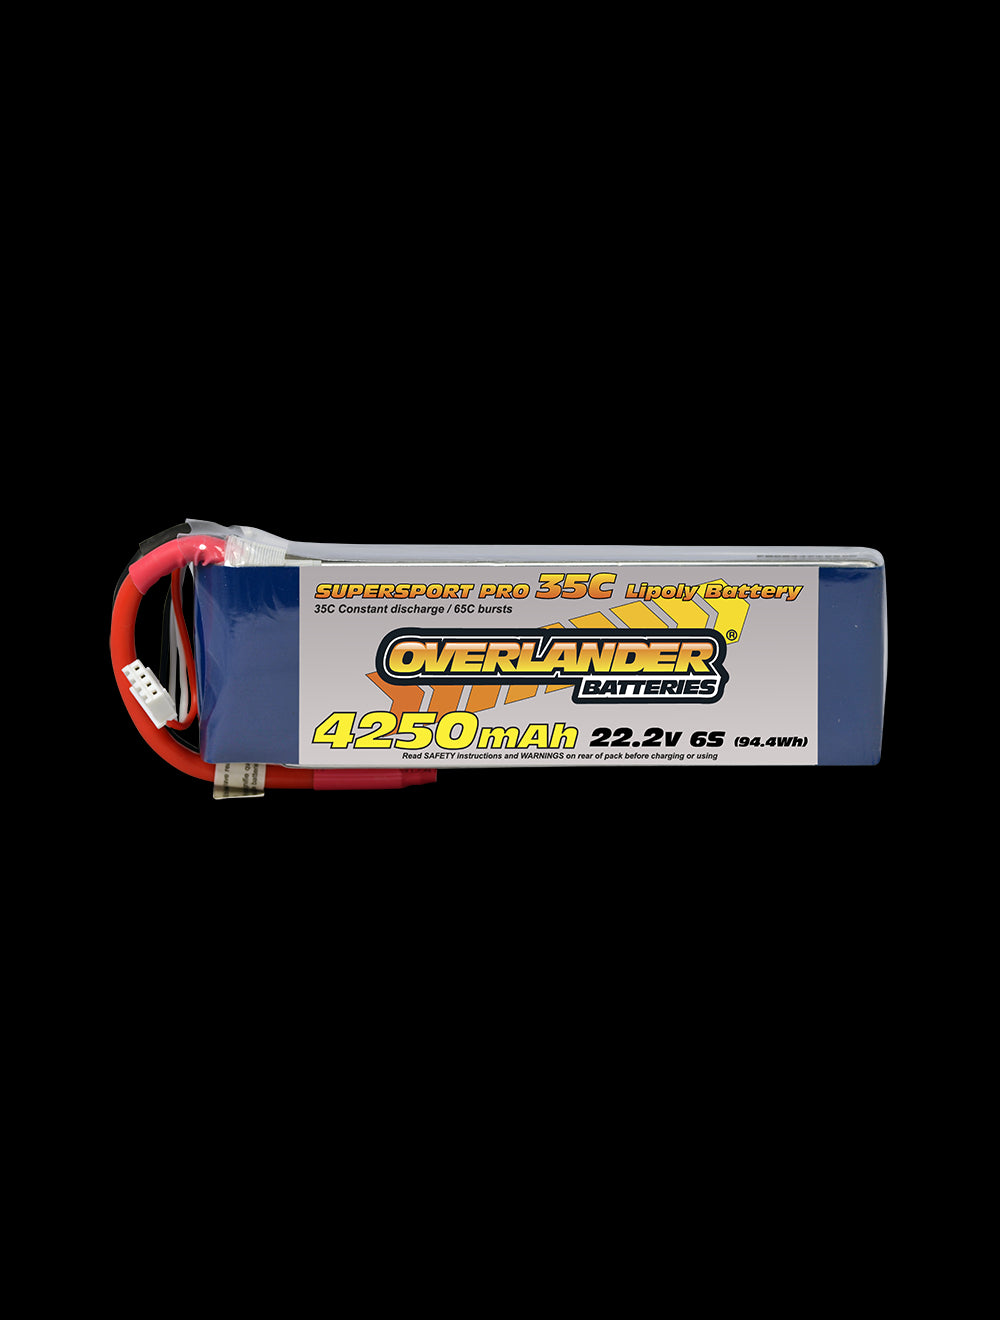 Overlander 4250mAh 22.2V 6S 35C Supersport Pro LiPo Battery - EC3 Connector 2478